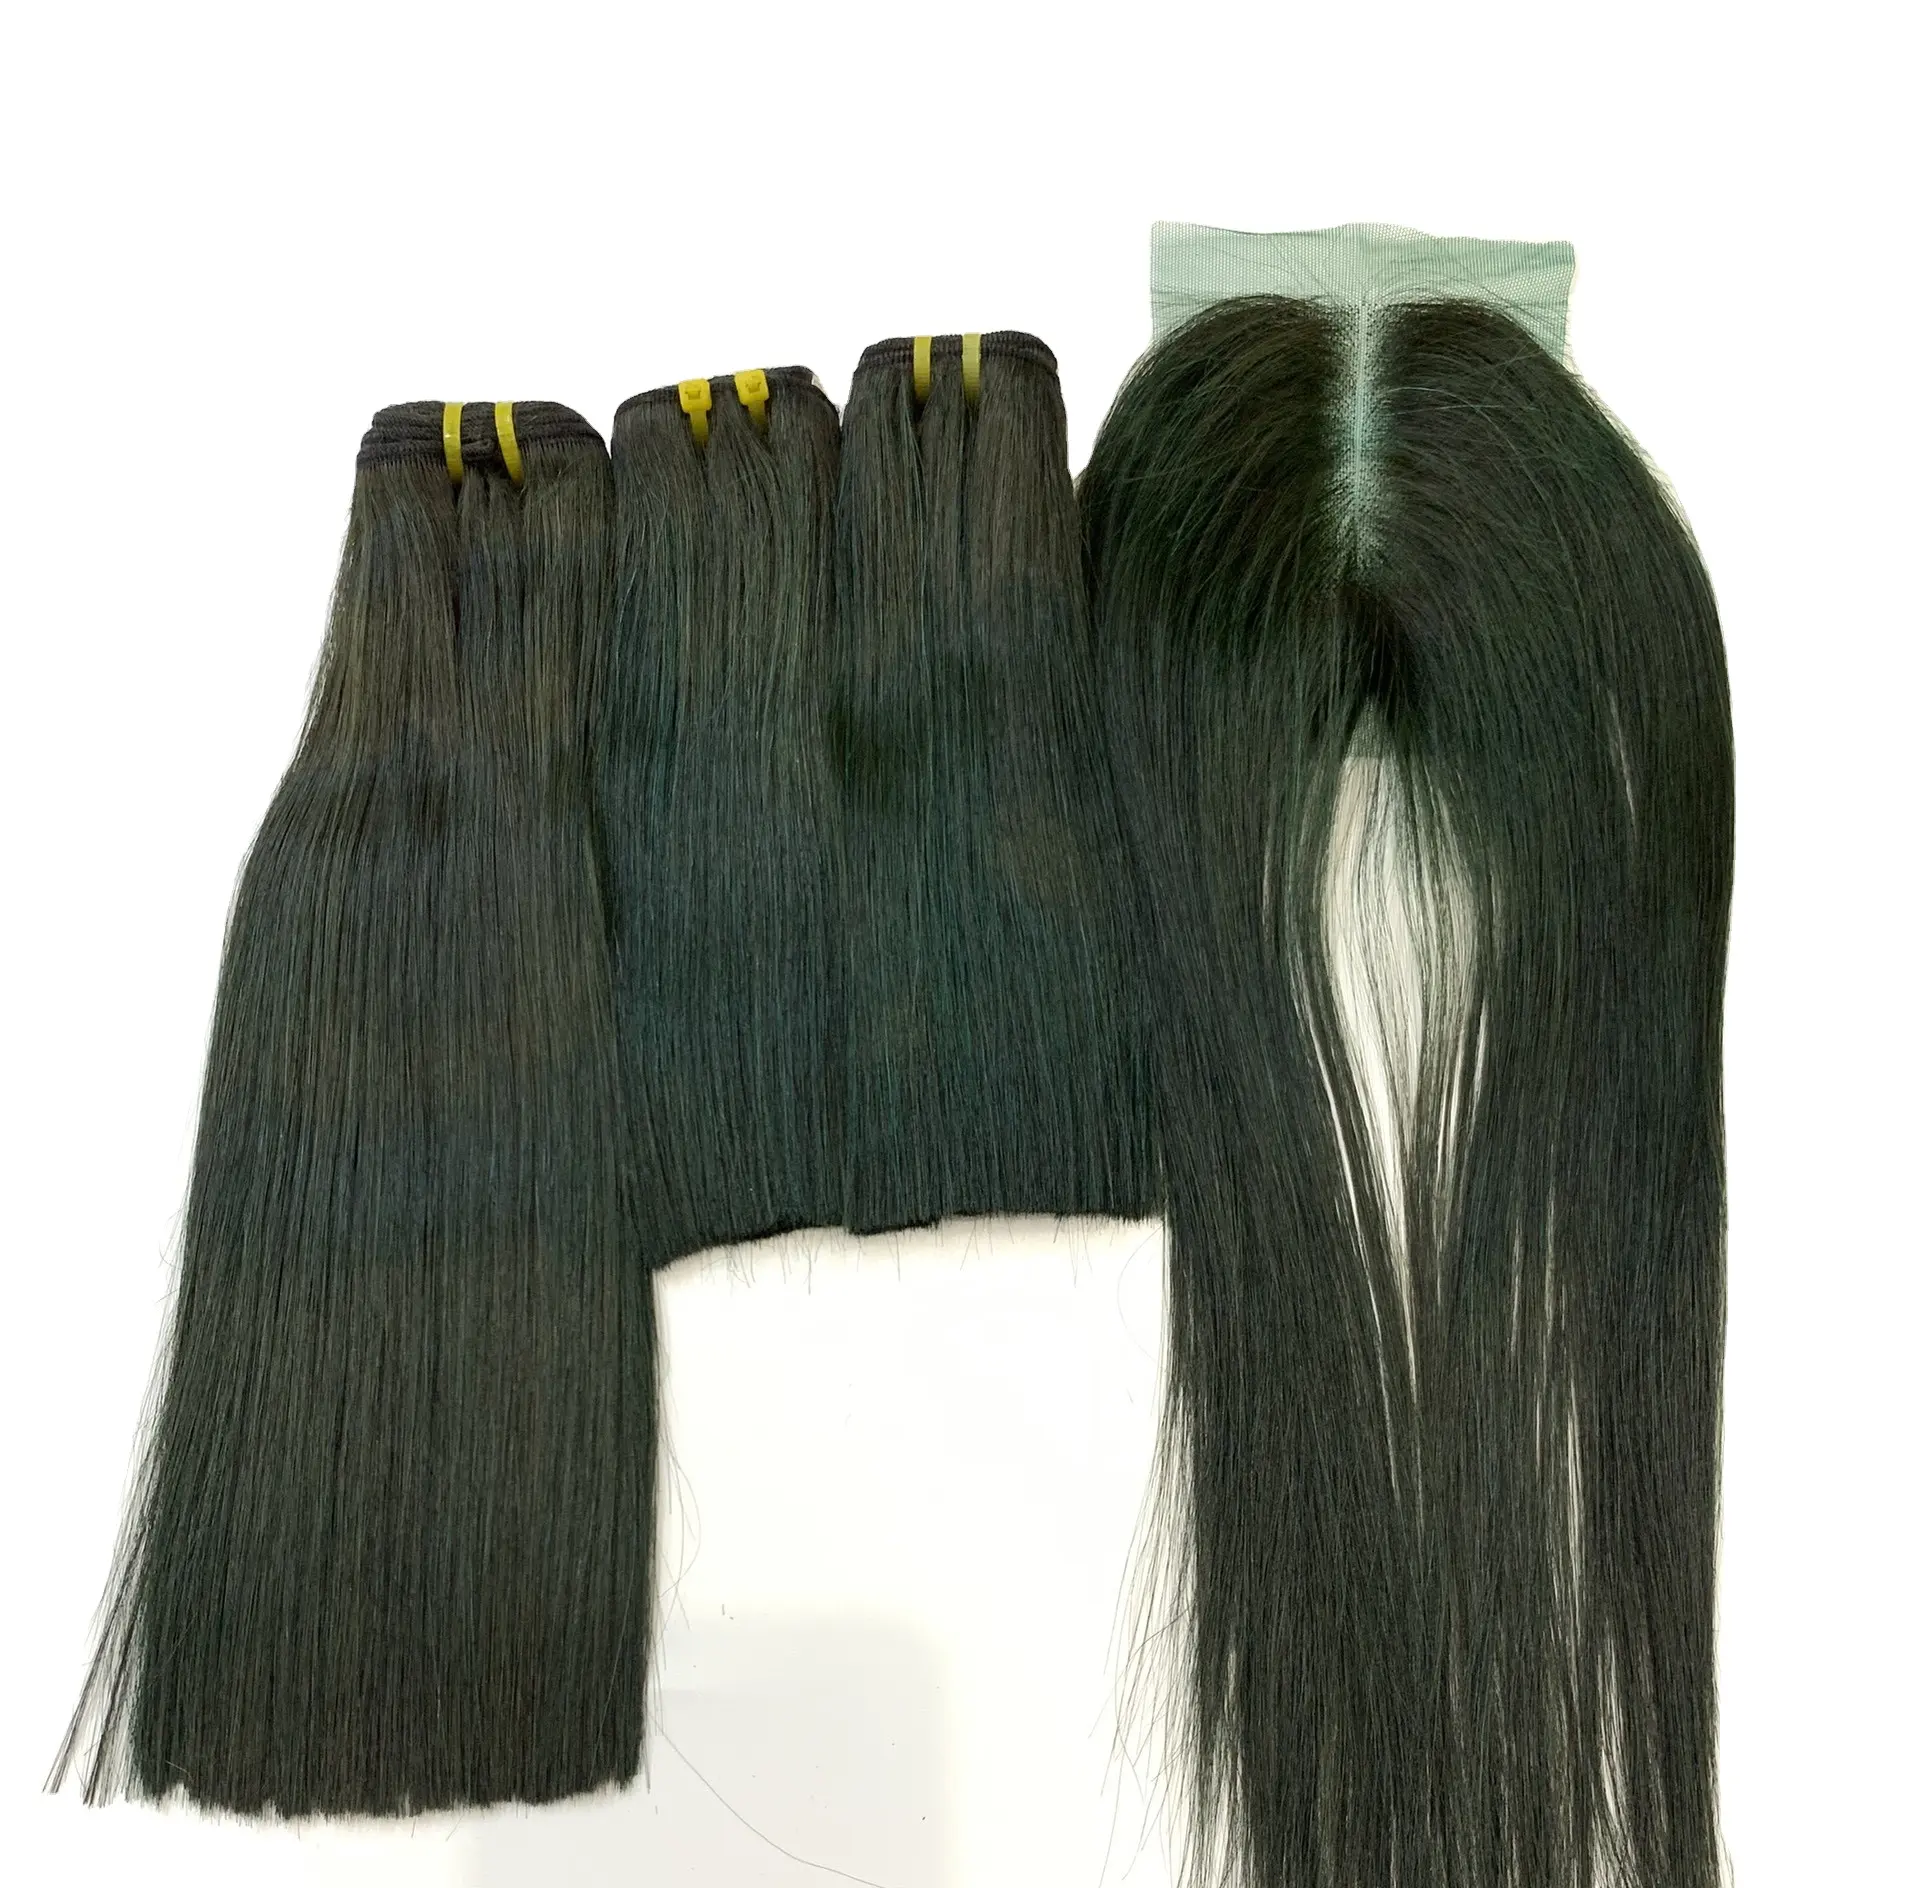 שיער חבילות עם סגירת להפוך מלא שיער טבעי פאה 10A 12A כיתה זול ברזילאי ישר שיער טבעי הארכת אריזה להתמודד